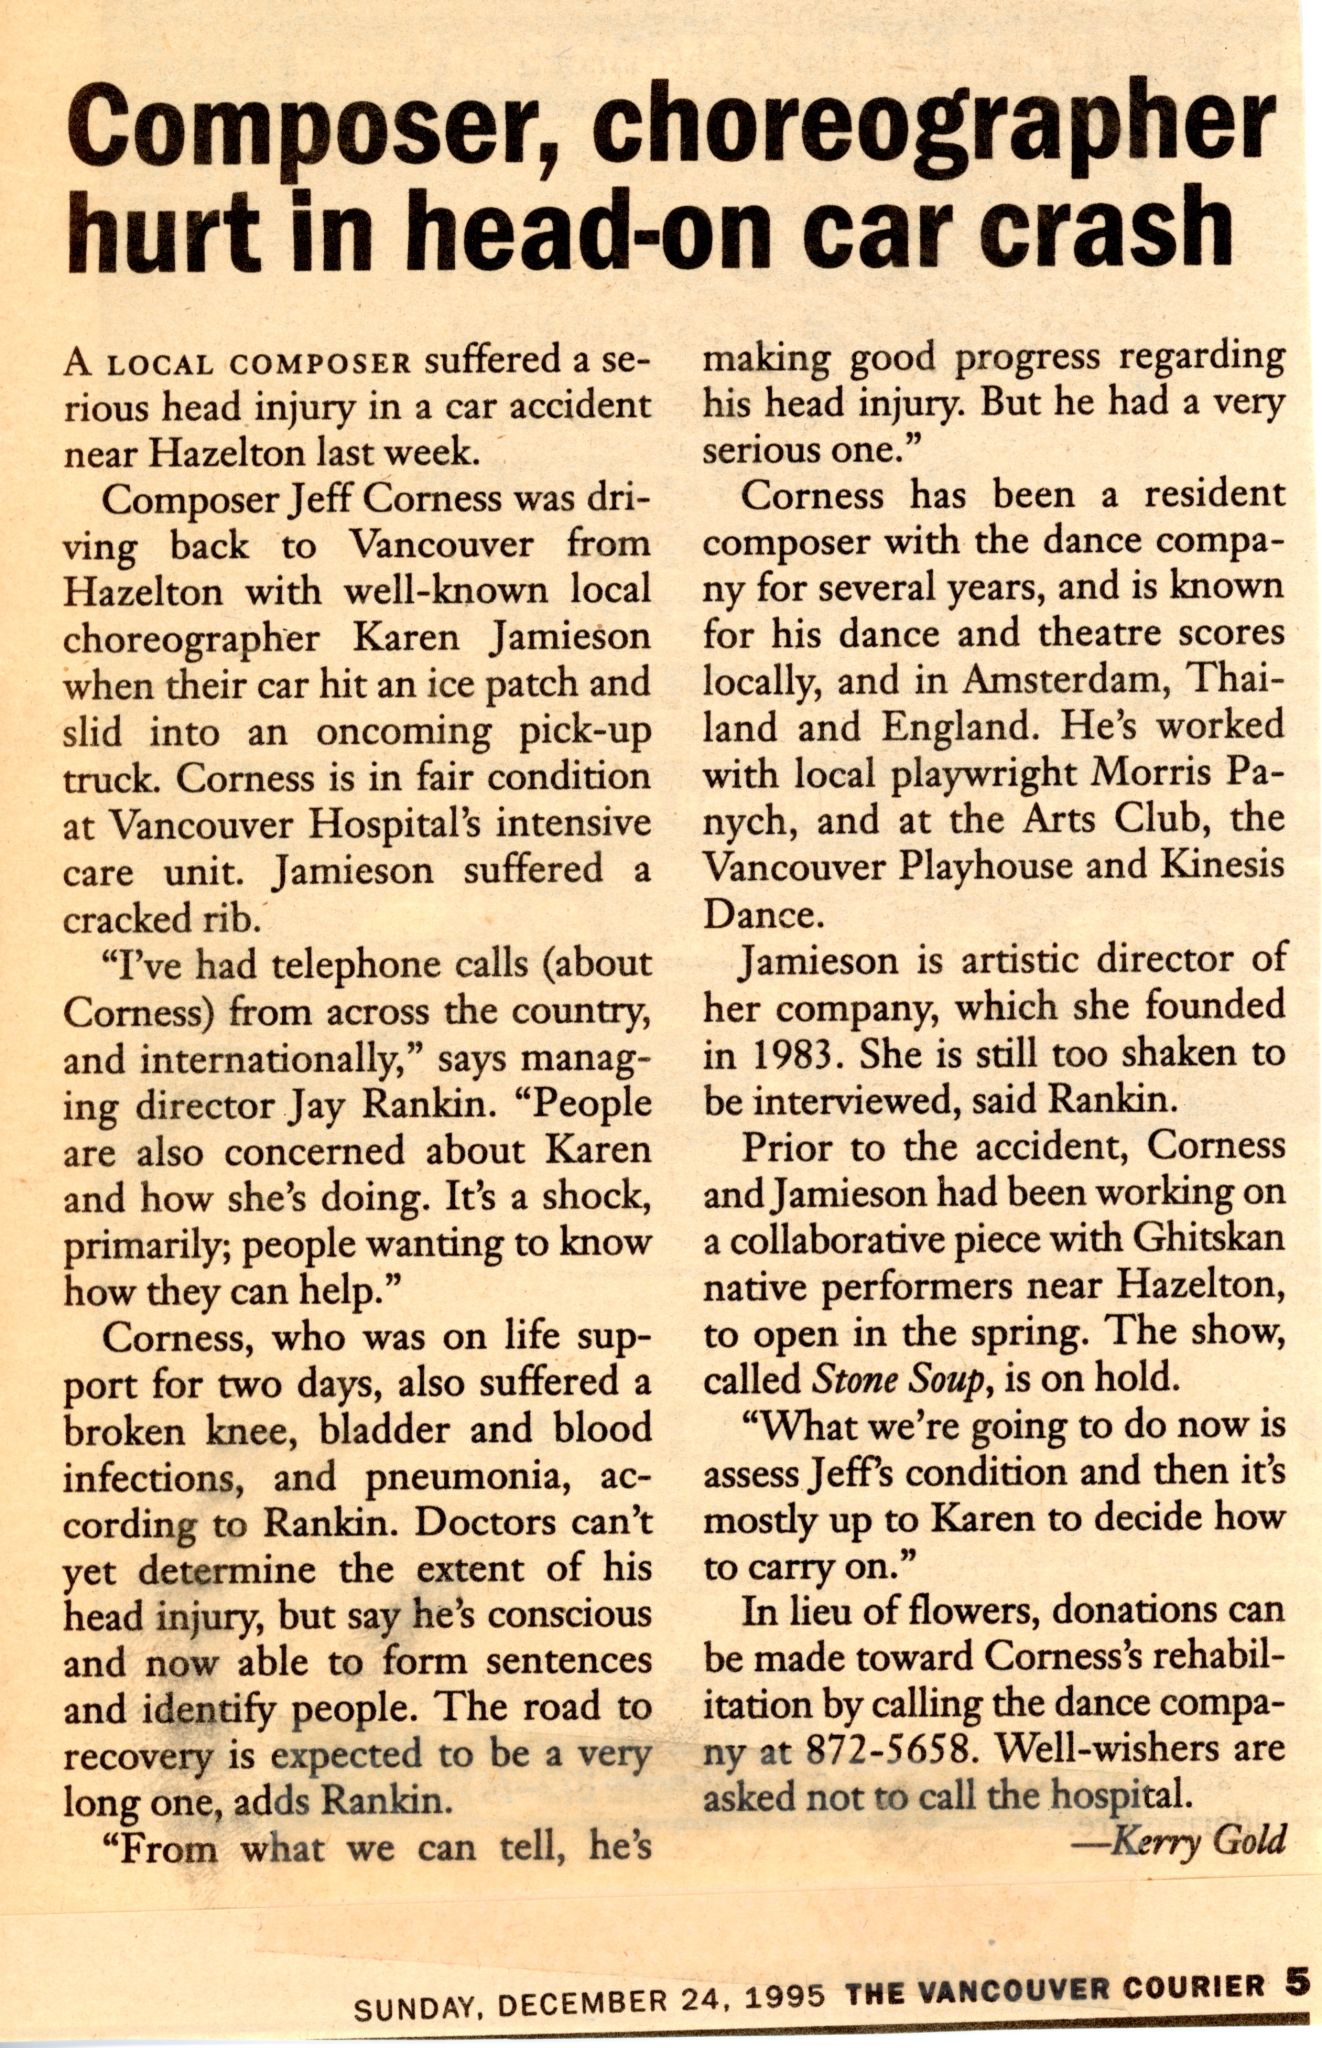 Stone_Soup_Vancouver_Courier_Sun_Dec_24_1995_newspaper_06.jpg